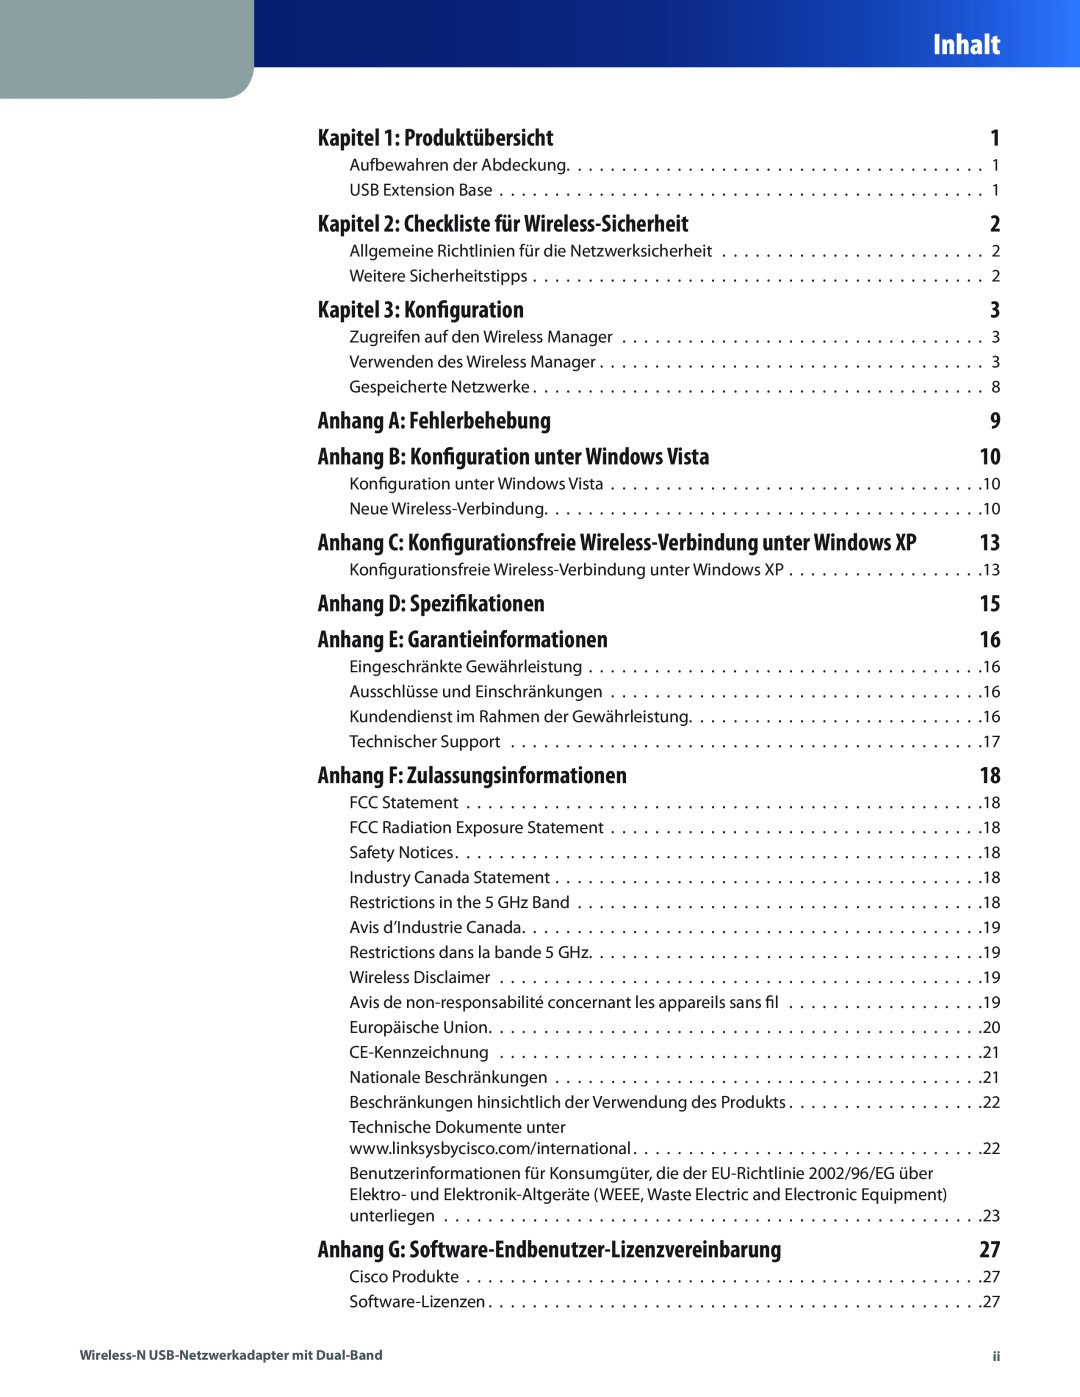 Cisco Systems WUSB600N manual Inhalt, Kapitel 1 Produktübersicht, Kapitel 2 Checkliste für Wireless-Sicherheit 